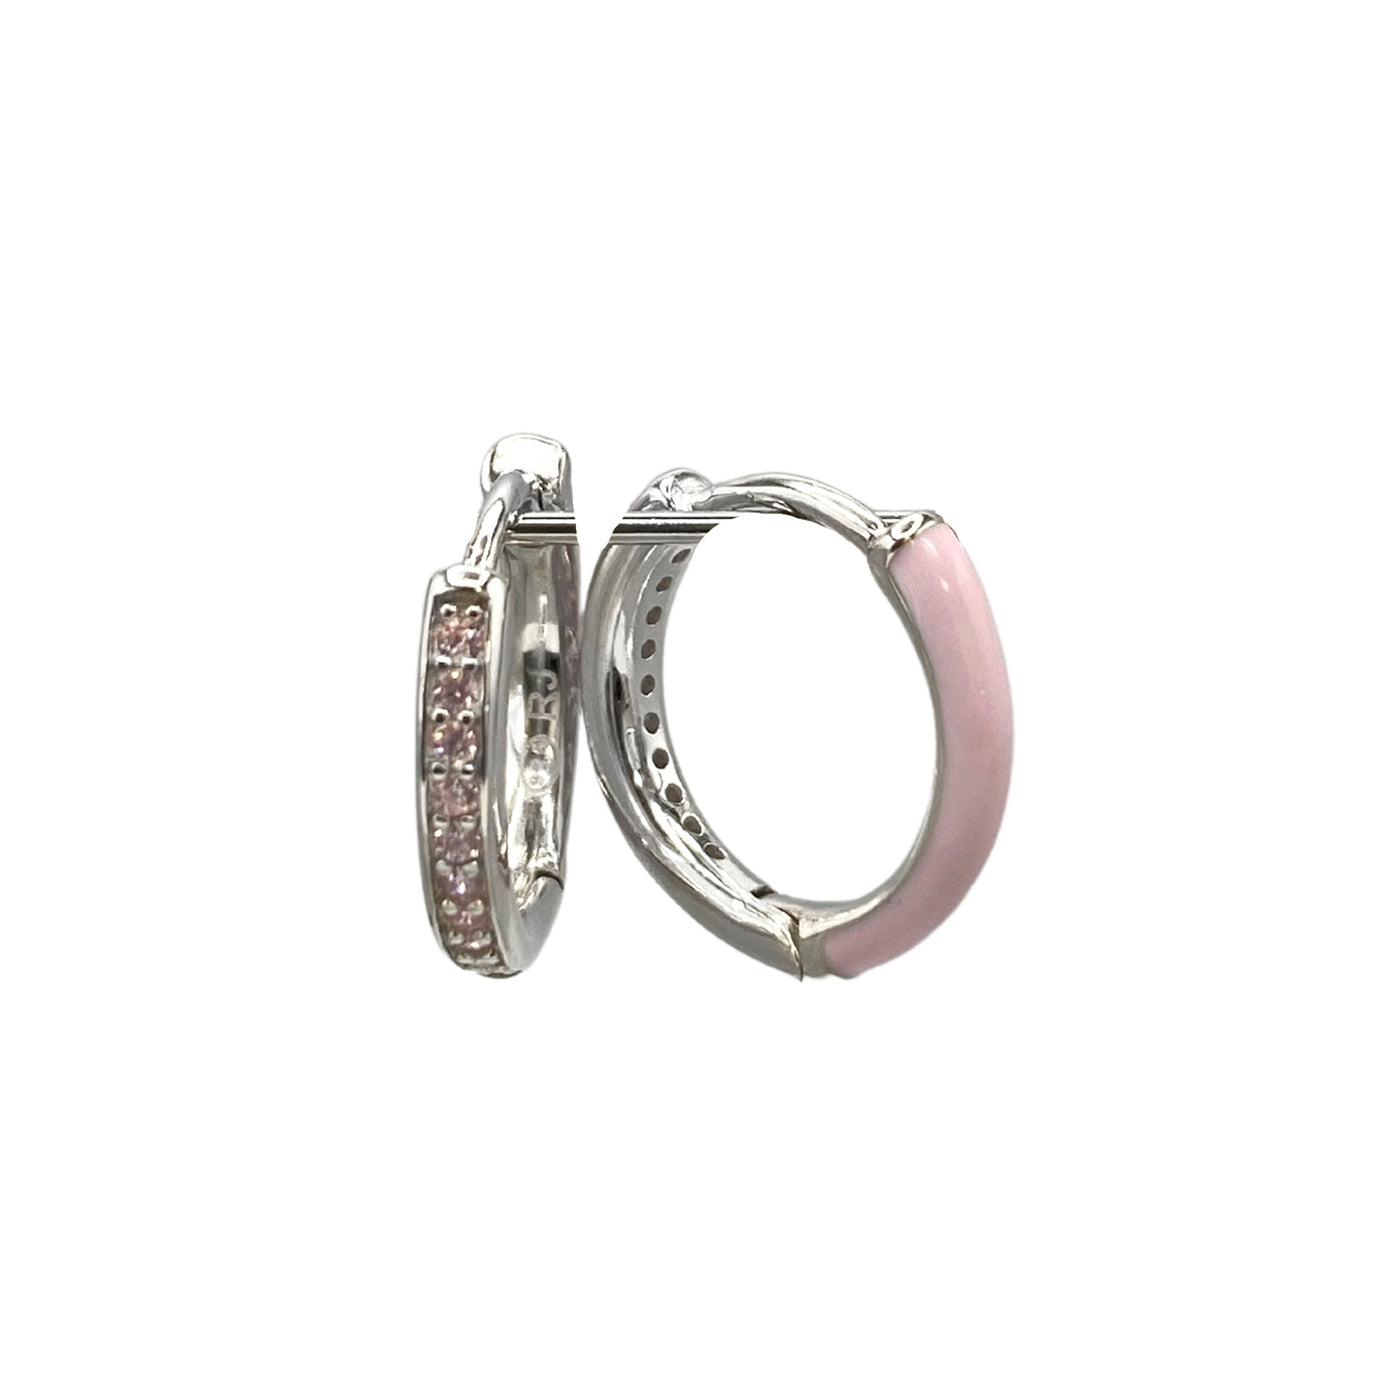 Silver hoop earrings with enamel - rhodium - 12.5 mm